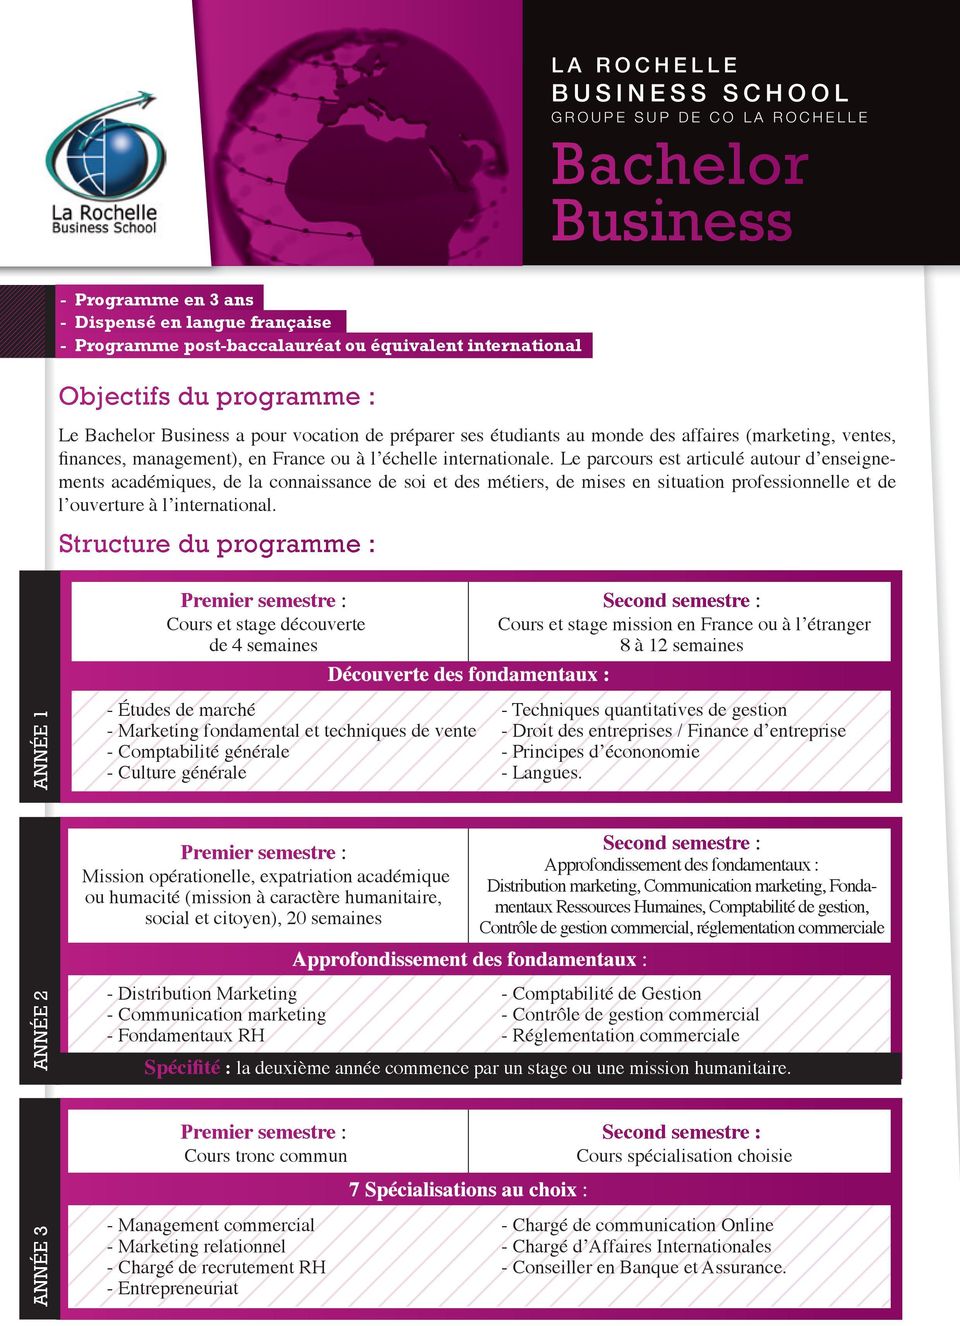 Structure du programme : Cours et stage mission en France ou à l étranger 8 à 12 semaines ANNÉE 1 - Études de marché - Marketing fondamental et techniques de vente - Comptabilité générale - Culture